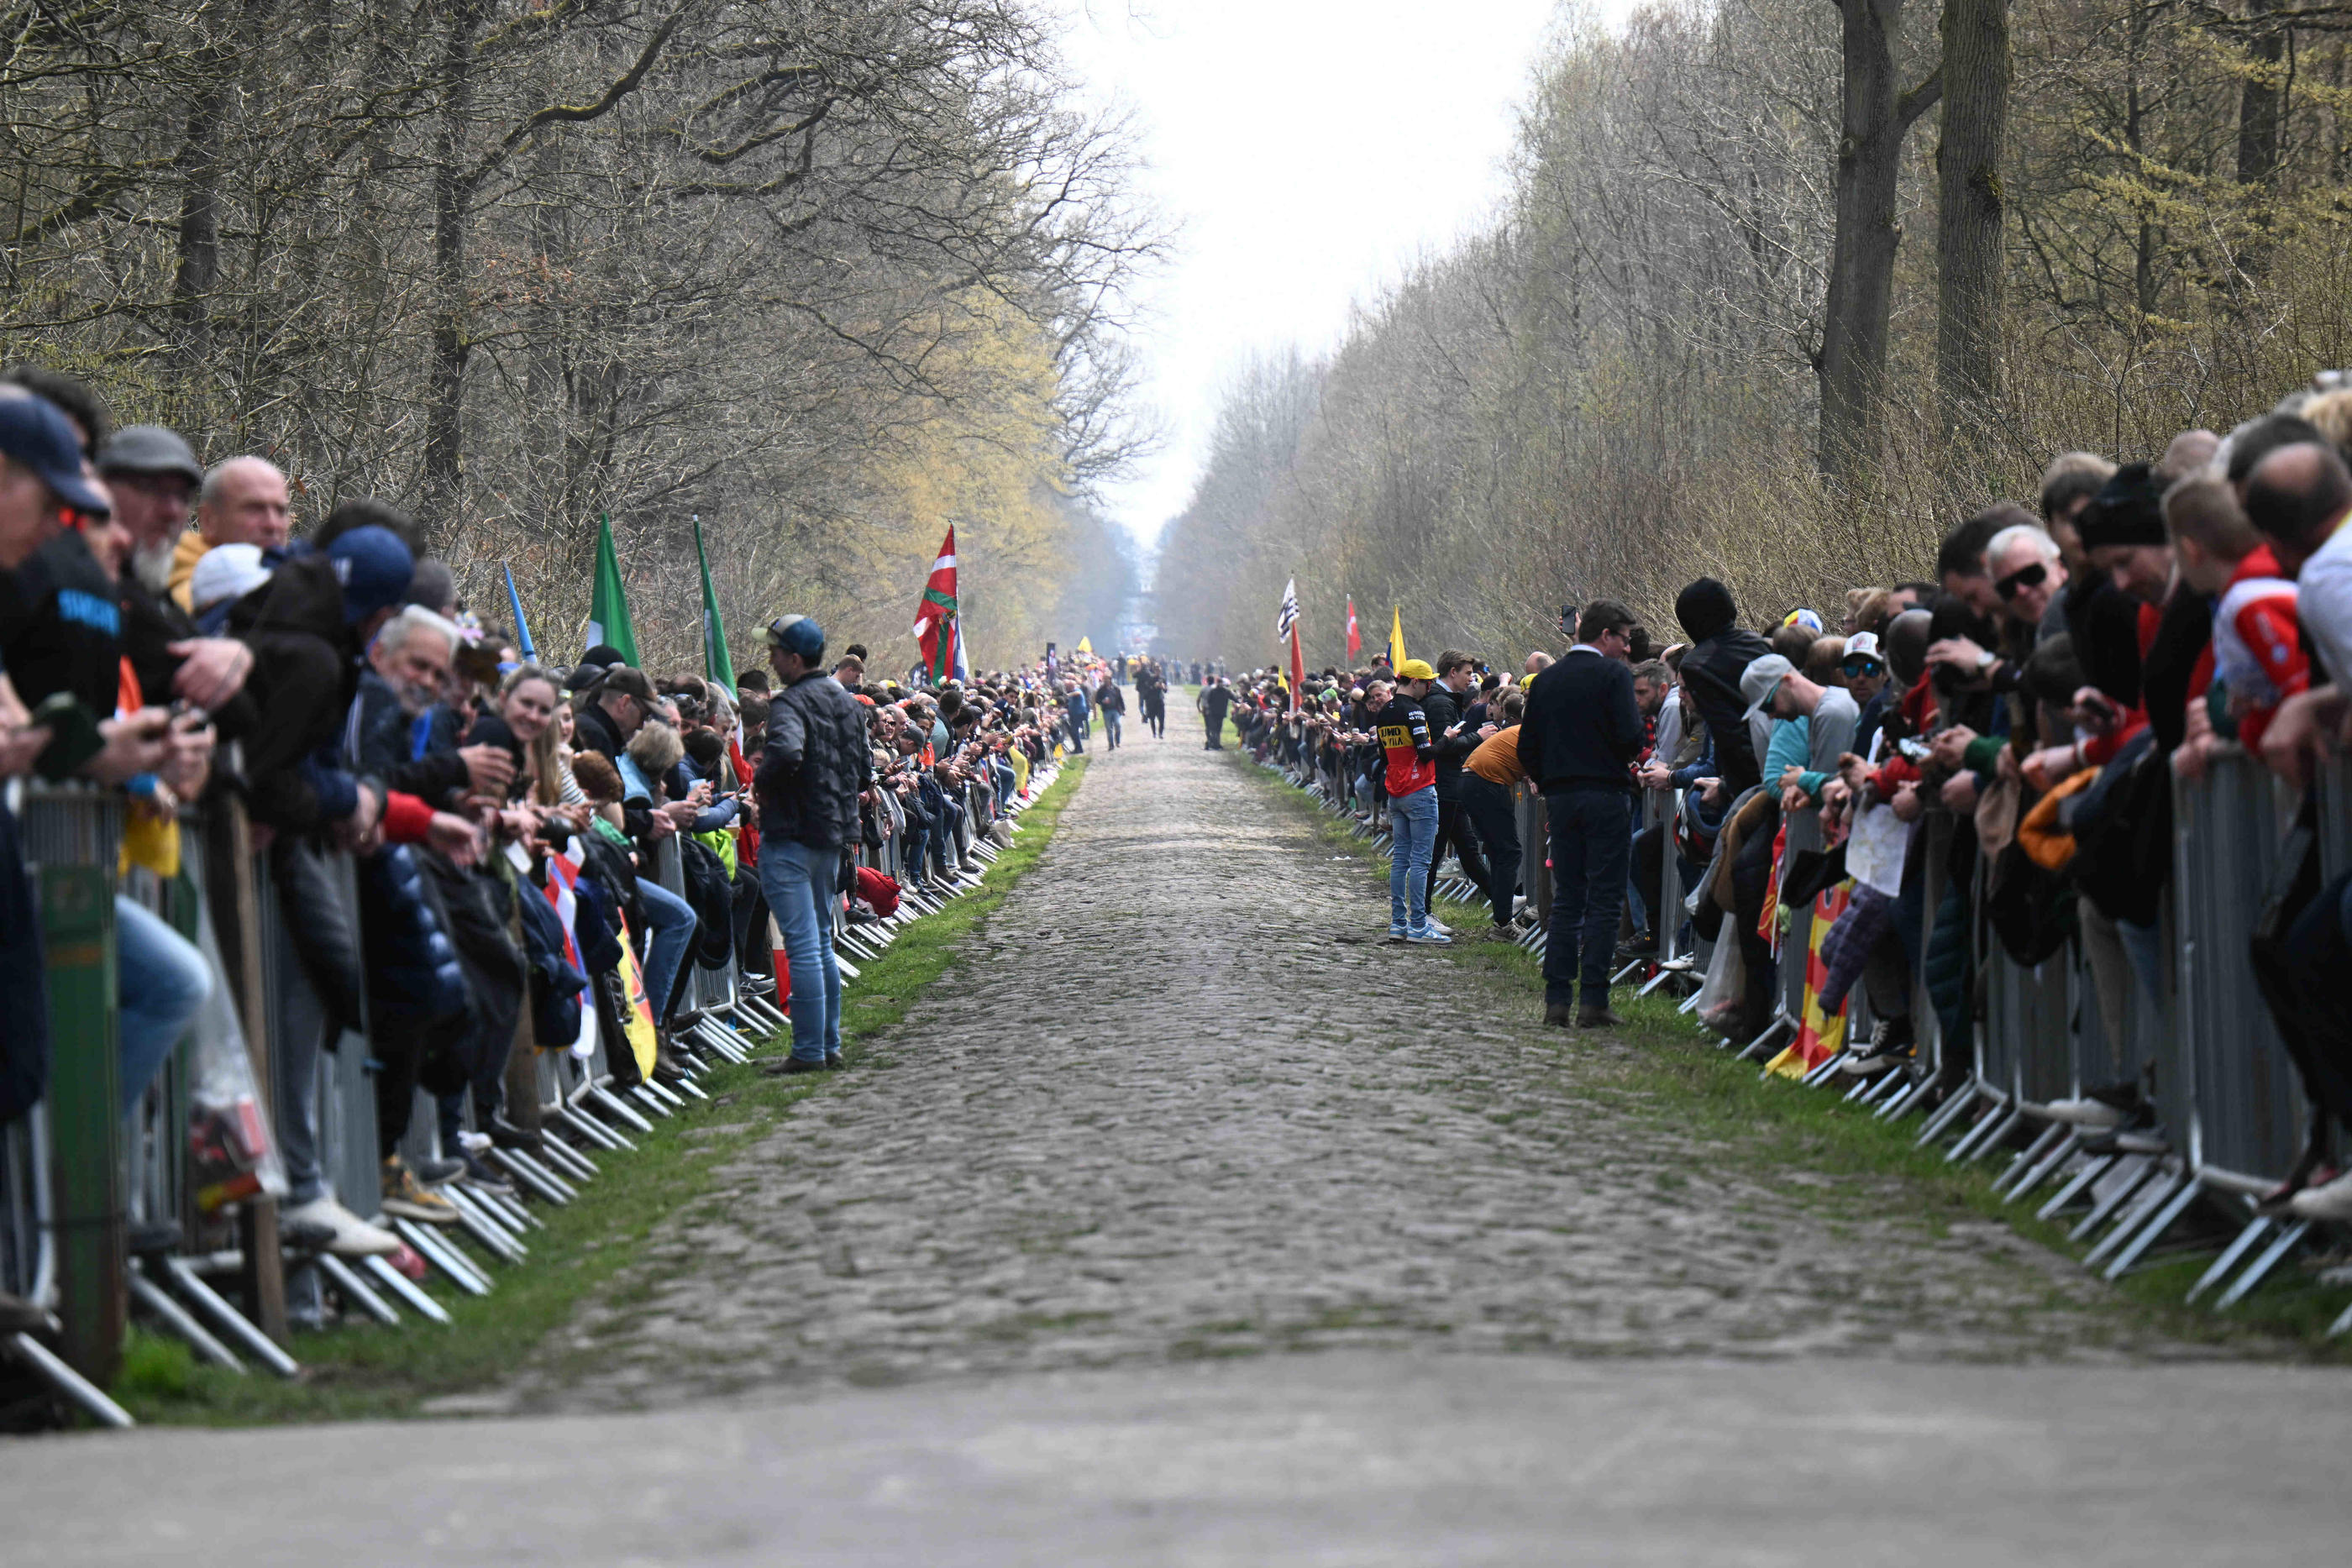 Les organisateurs de Paris-Roubaix ont été contactés en urgence le 29 mars afin de ralentir l’entrée des coureurs dans la mythique trouée d’Arenberg, abordée à près de 60 km/h. Icon Sport/Sirotti Stefano